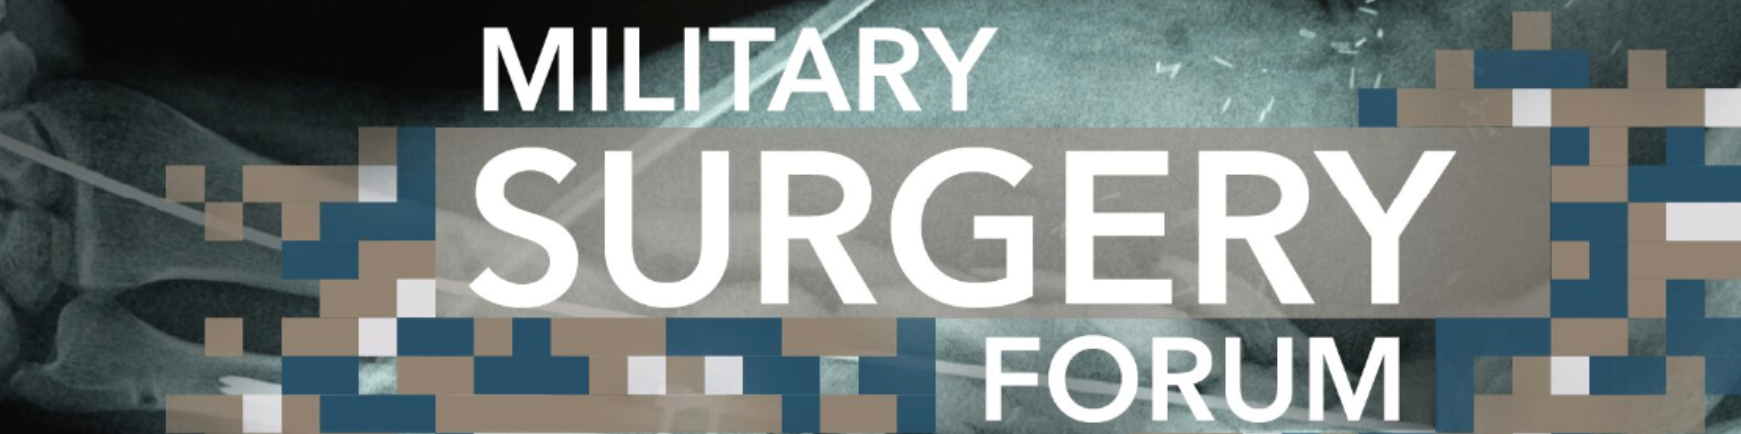 Ризький військово-хірургічний форум